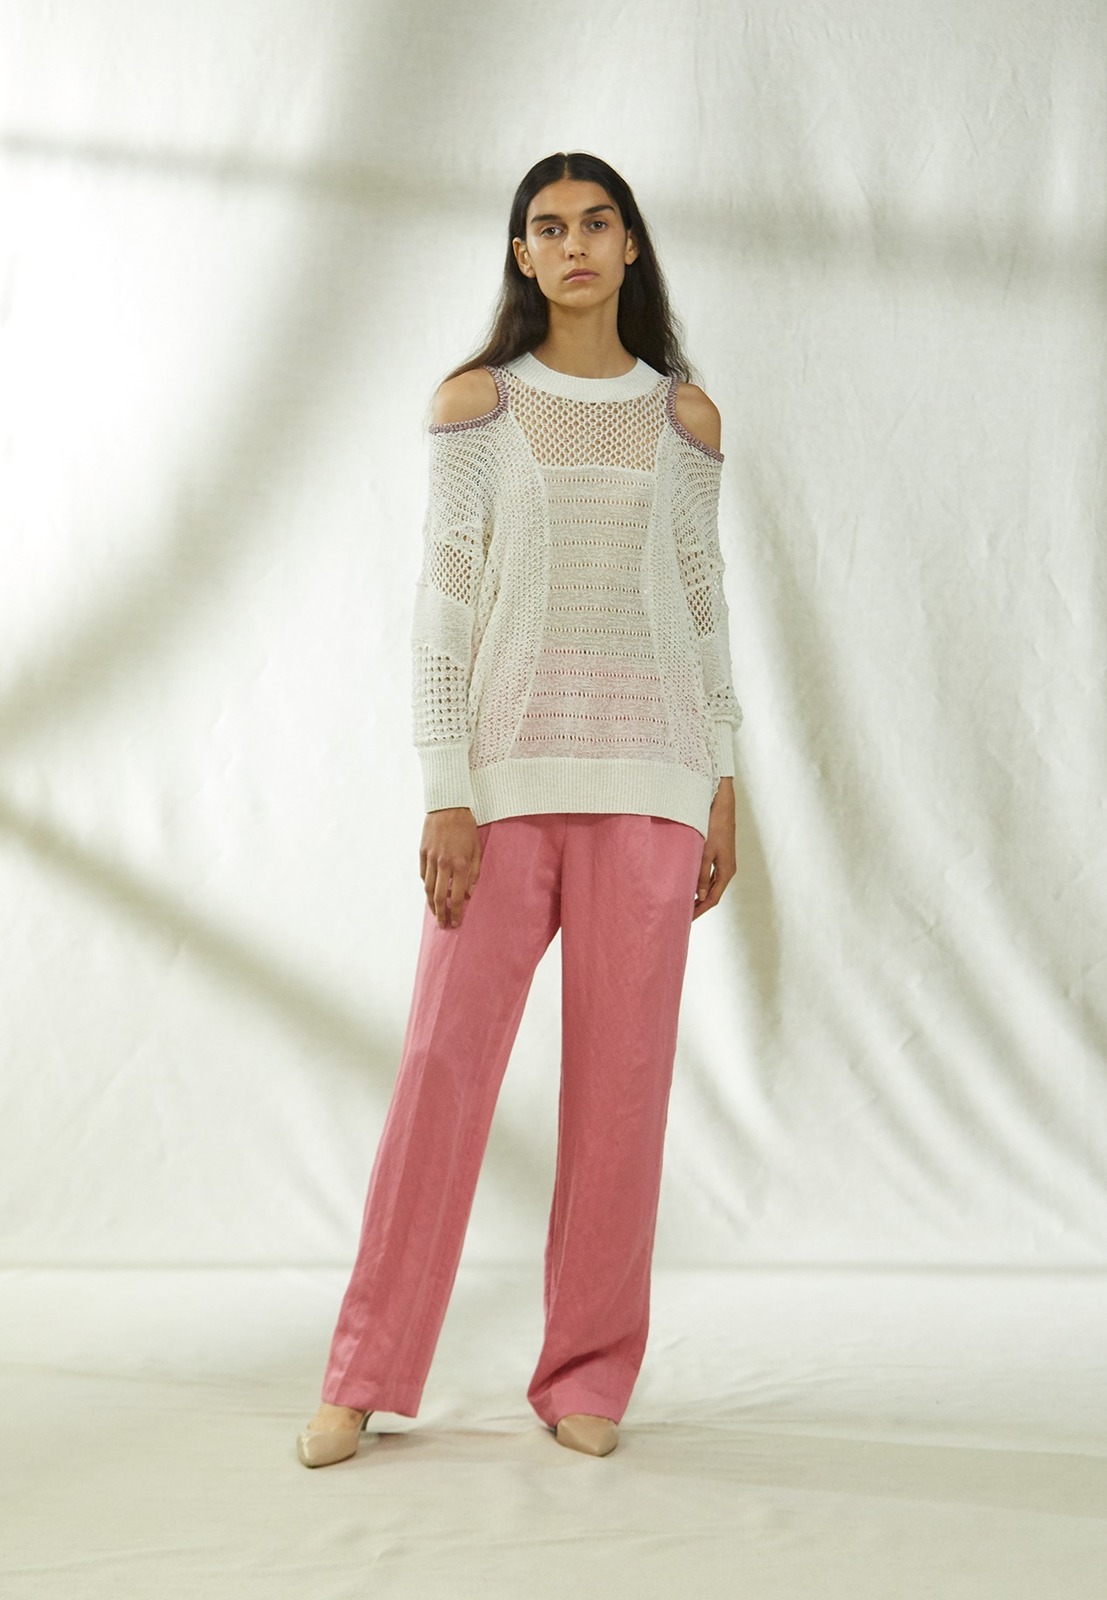 写真40 42 レディース ピンクのパンツ ロング のコーディネート着用 コレクションルックギャラリー ファッションプレス